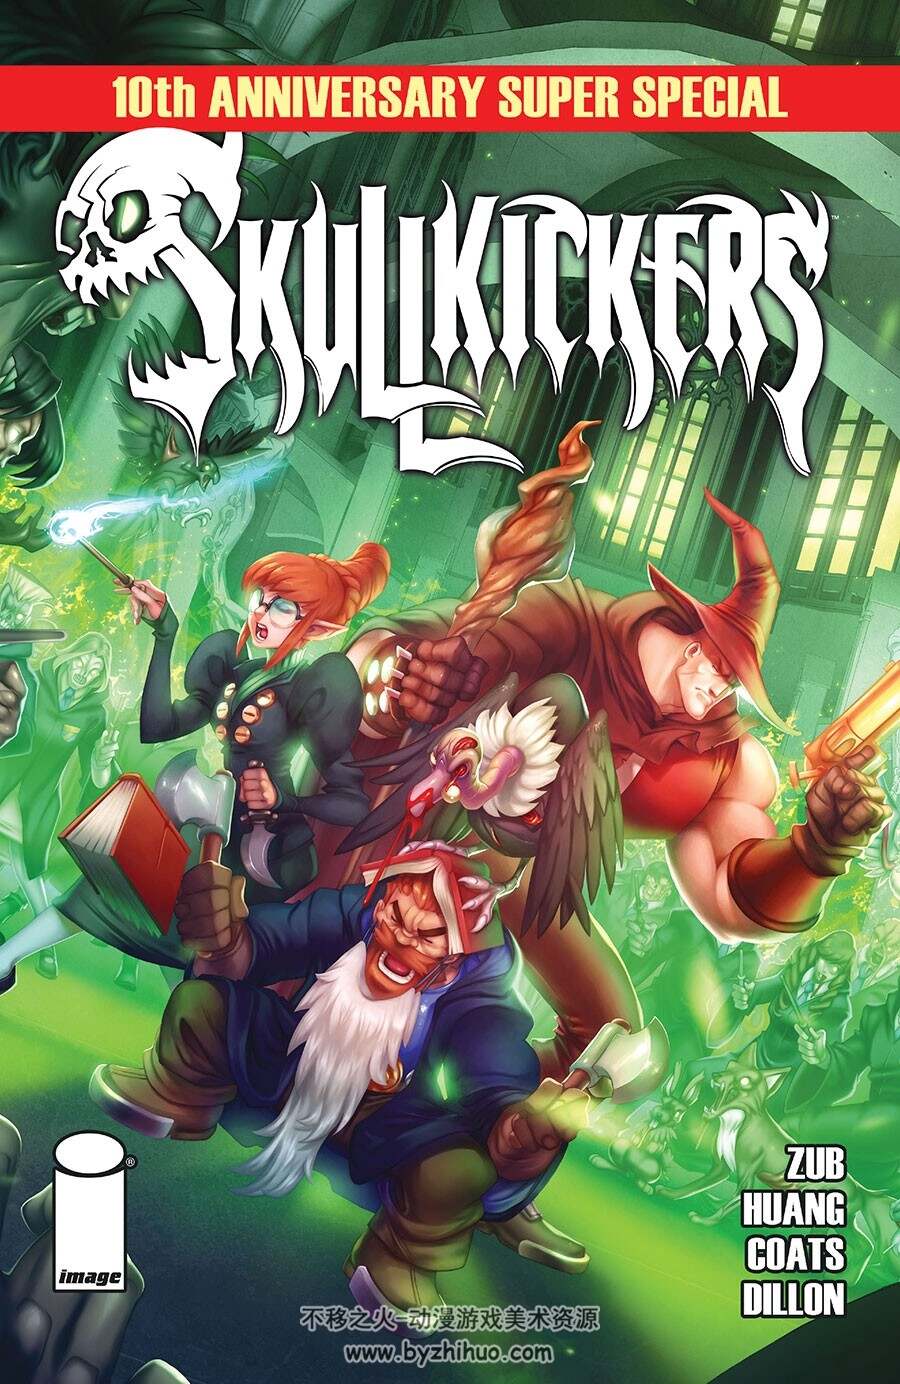 Skullkickers Super Special 漫画 百度网盘下载